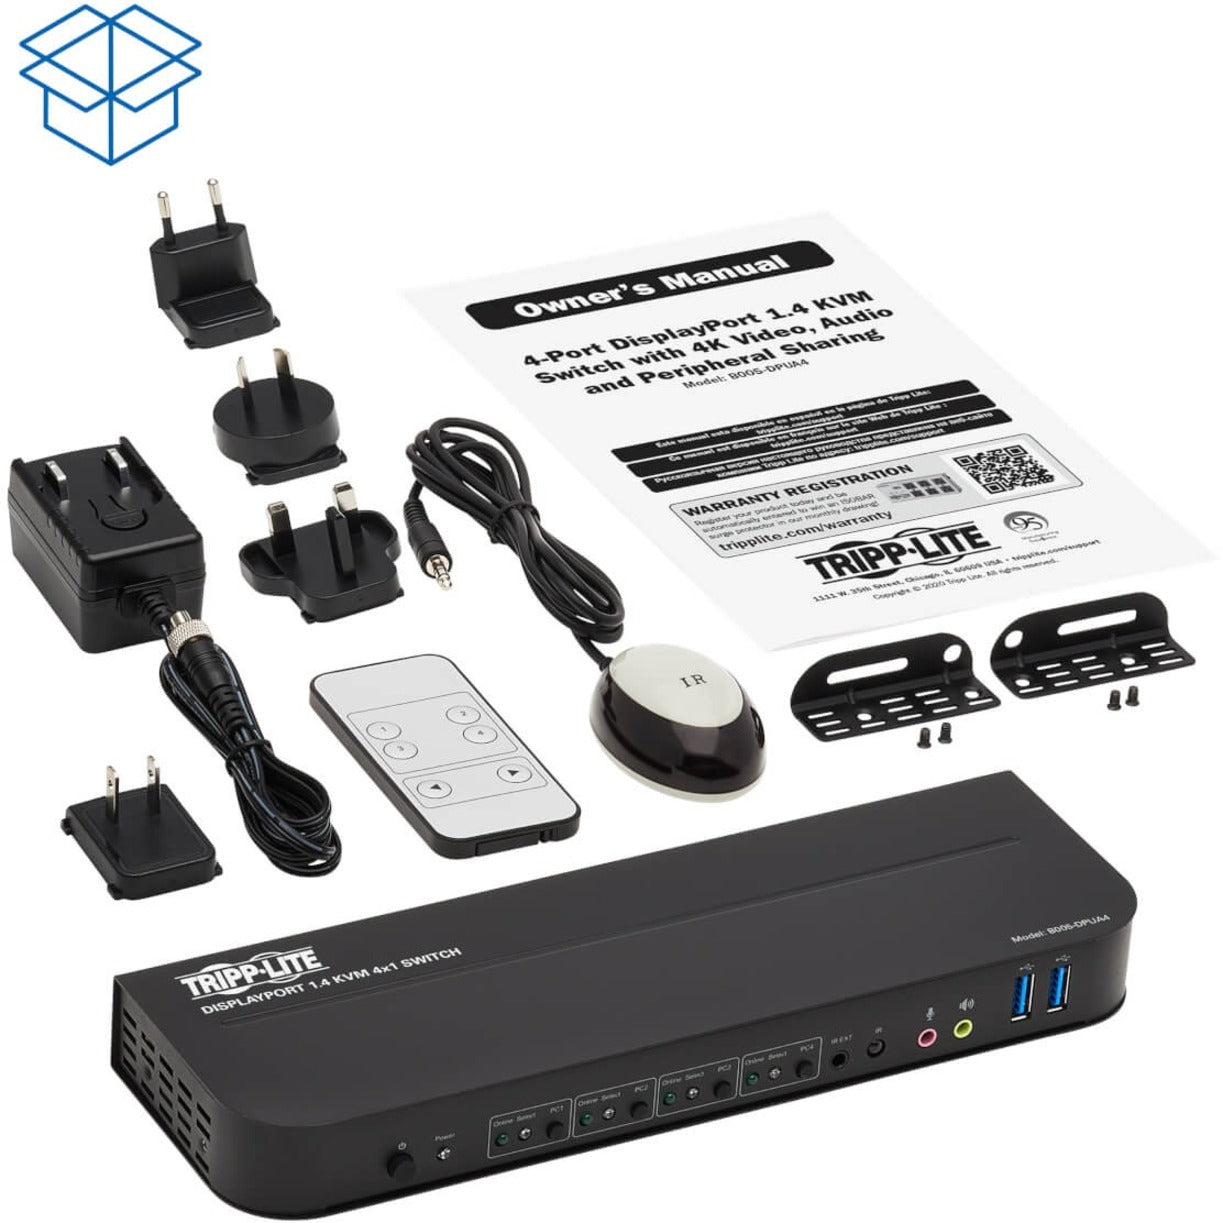 Tripp Lite B005-DPUA4 4-Port DisplayPort/USB KVM Switch, 4096 x 2160 Resolution, 3-Year Warranty